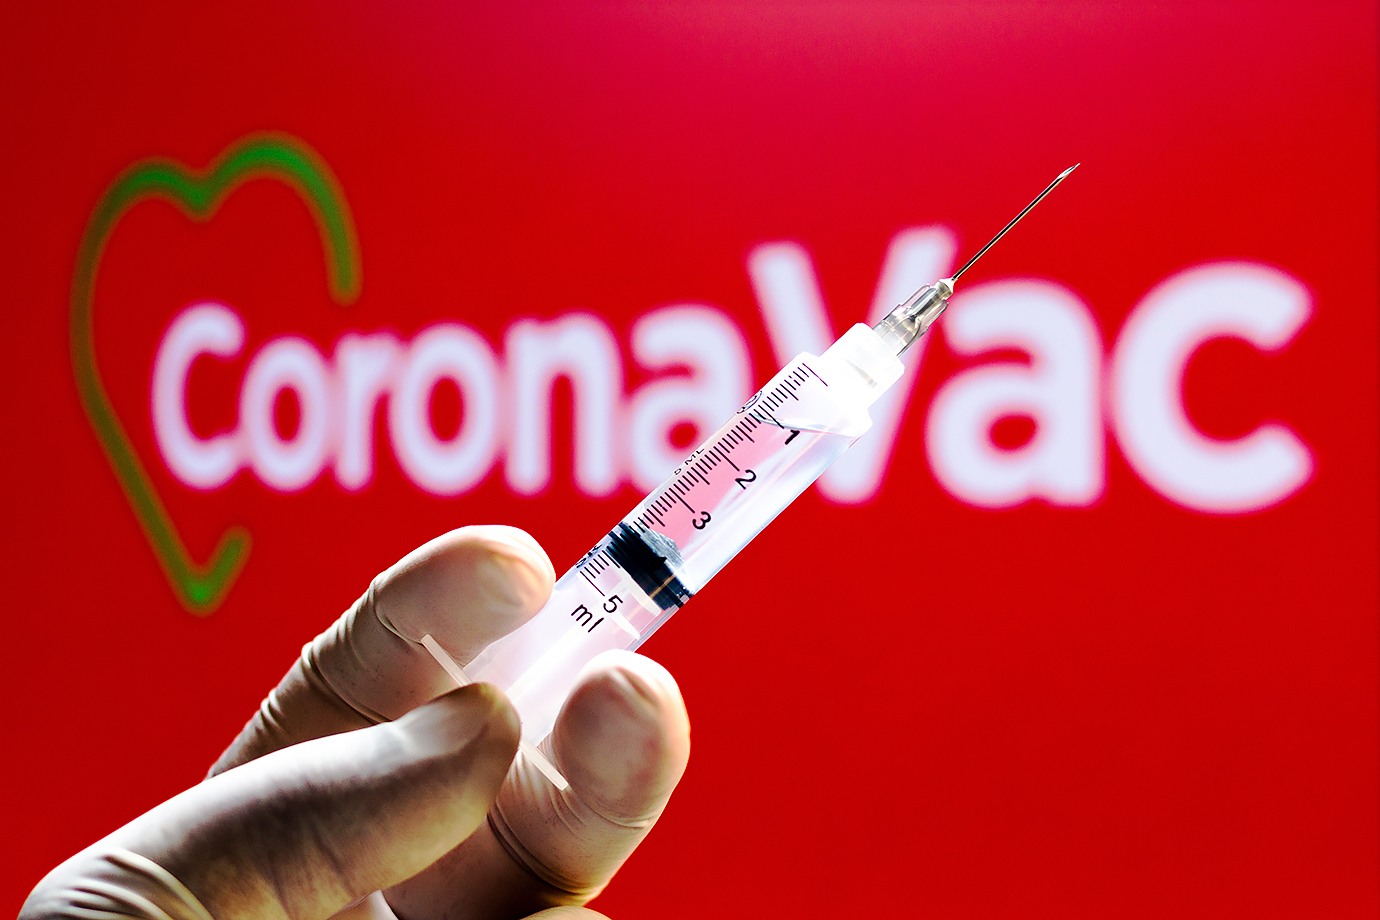 Azərbaycana 1 milyondan çox “CoronaVac” vaksini gətiriləcək